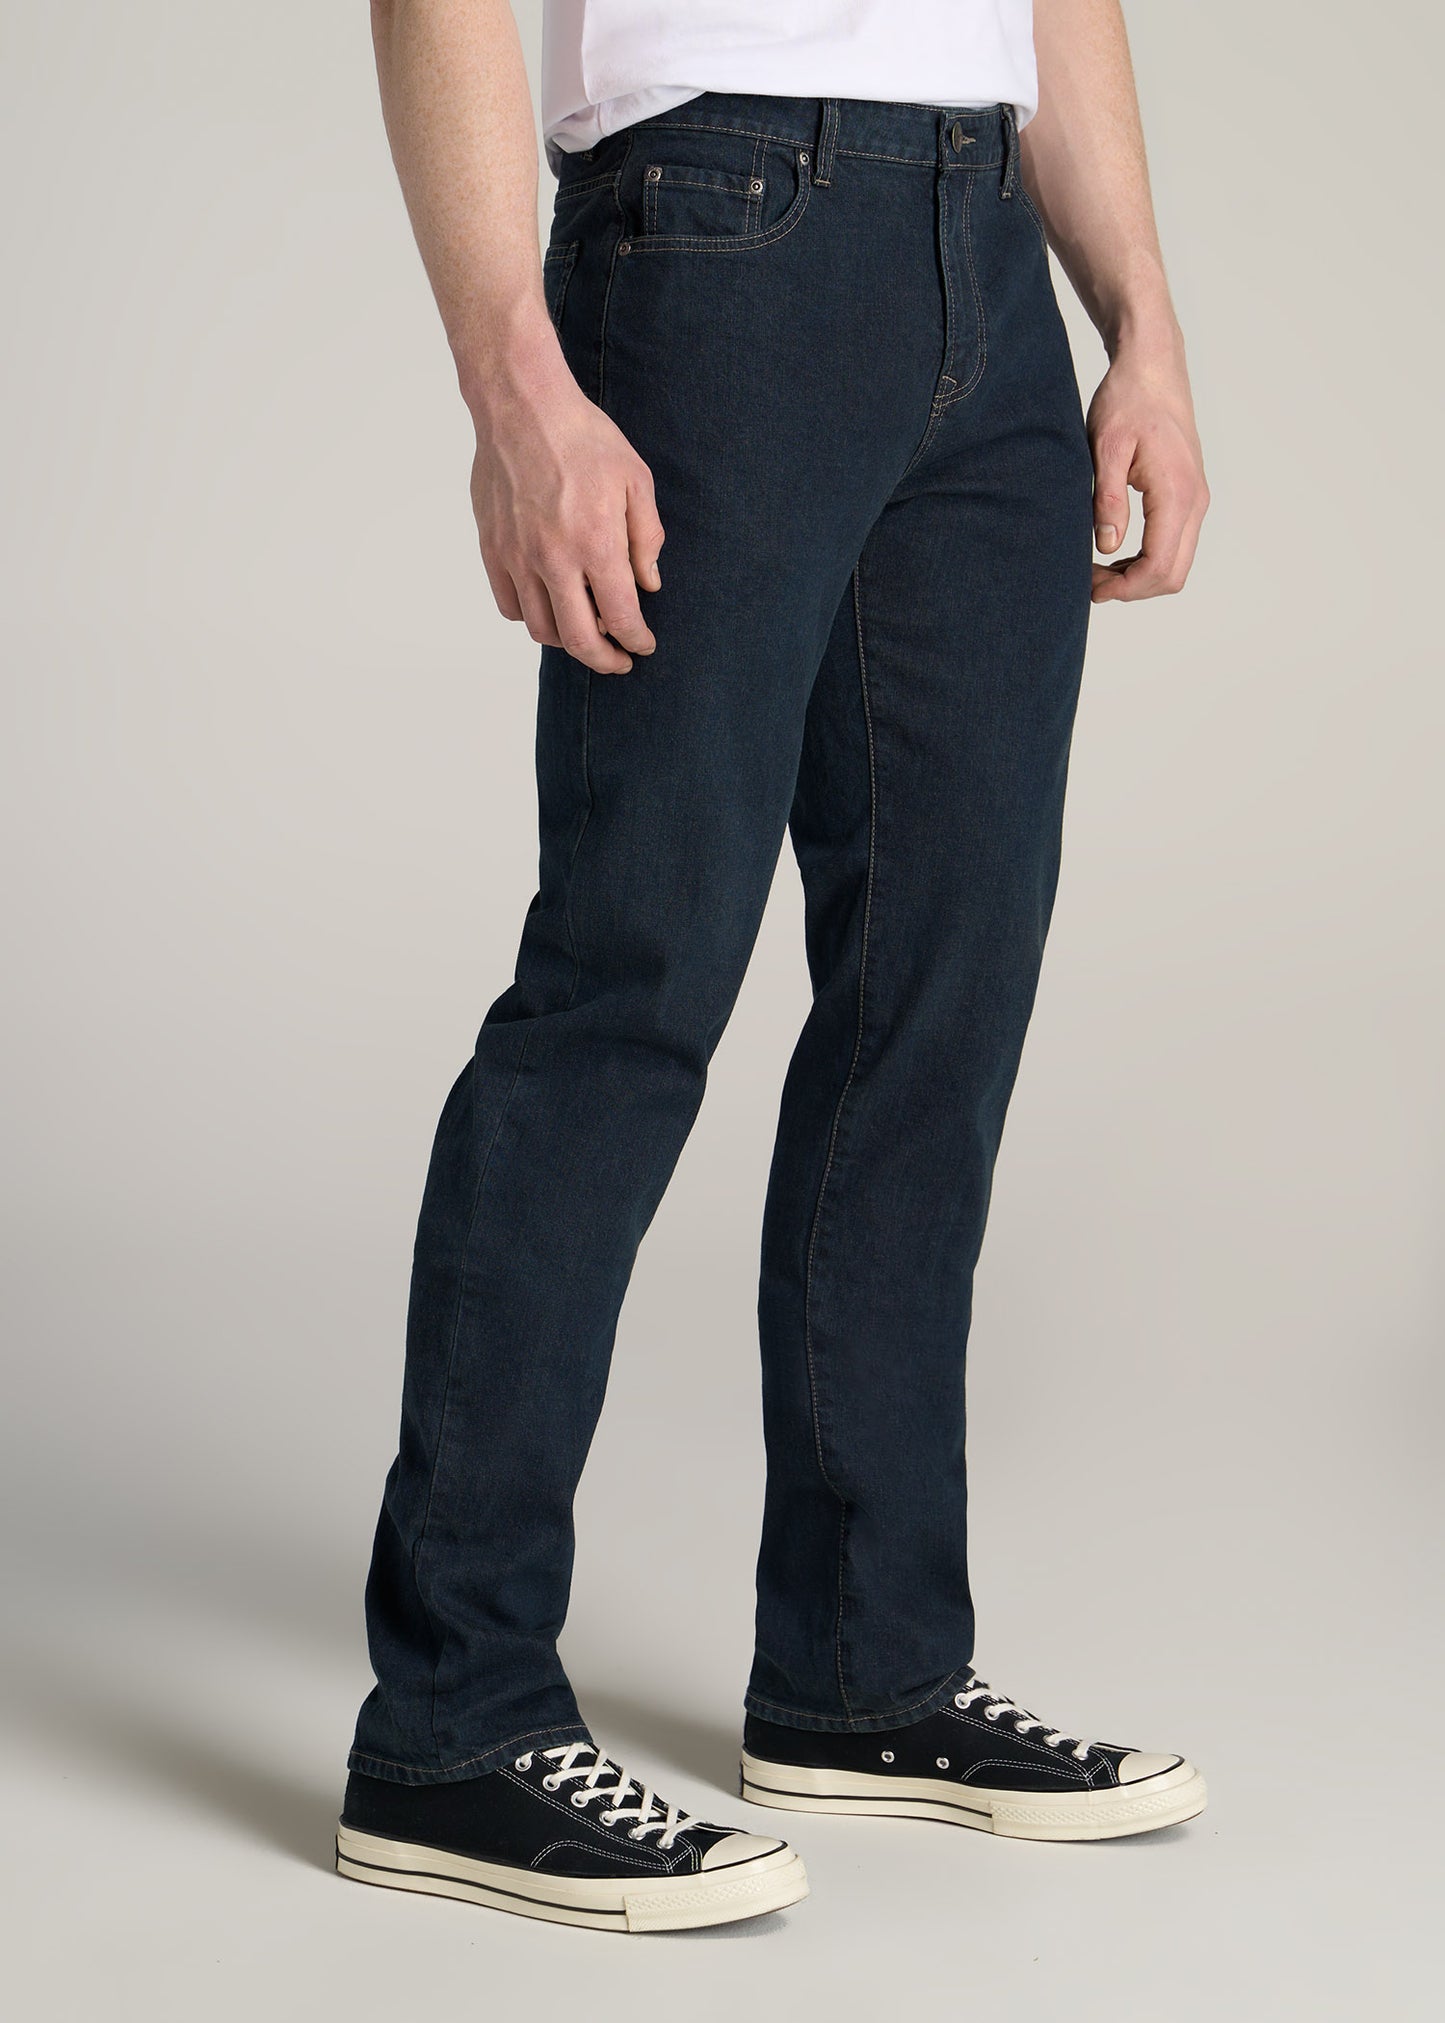 Gap Jeans for Men, Slim & Straight Jeans